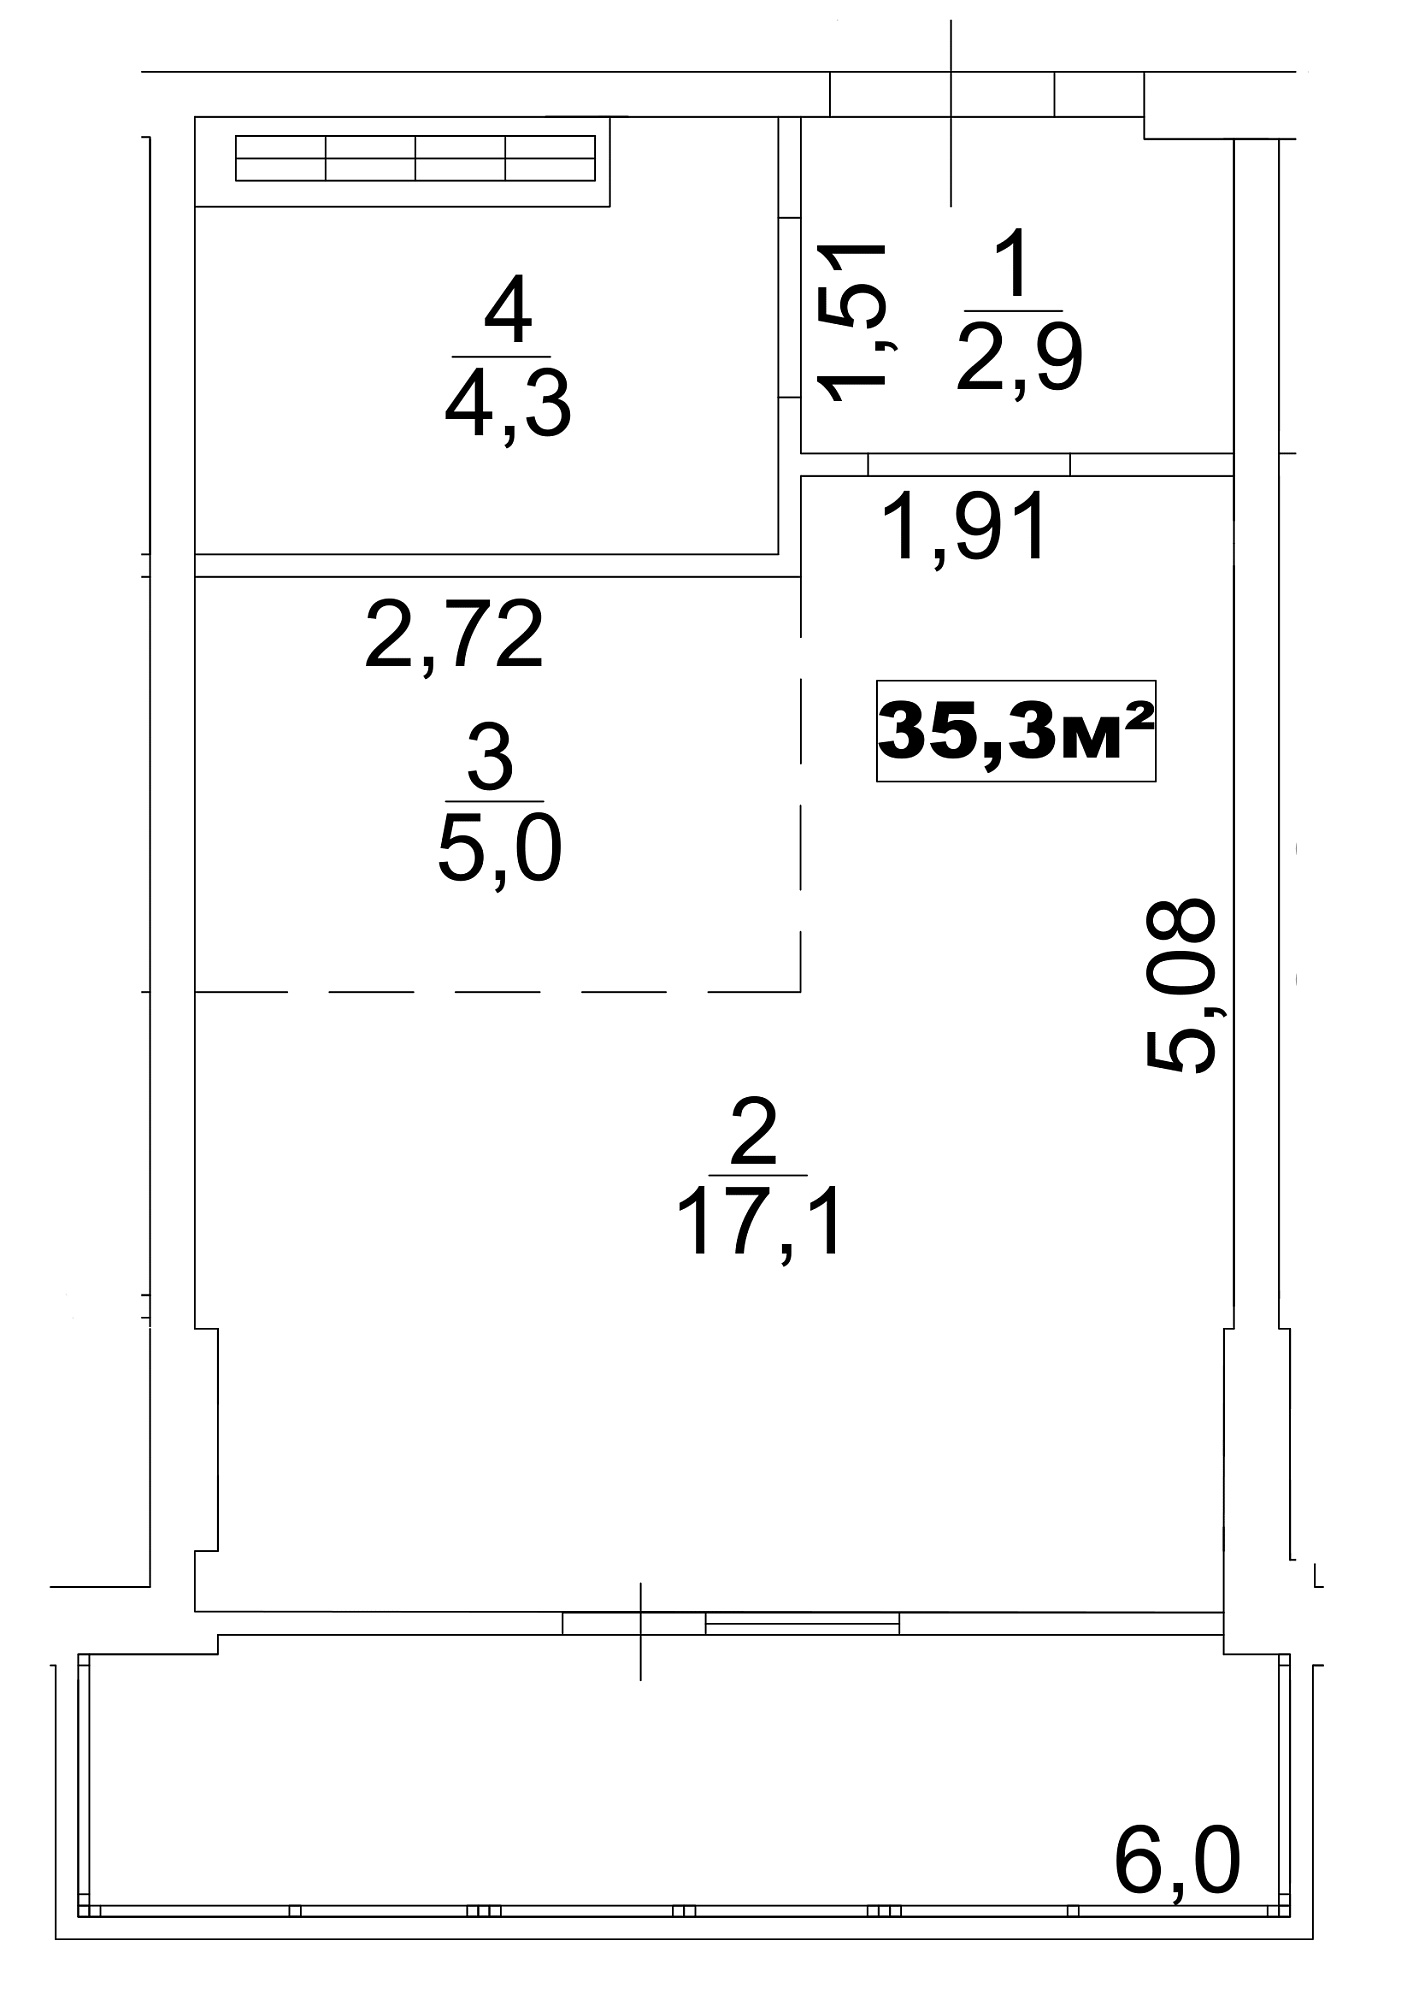 Планування Smart-квартира площею 35.3м2, AB-13-08/0061б.